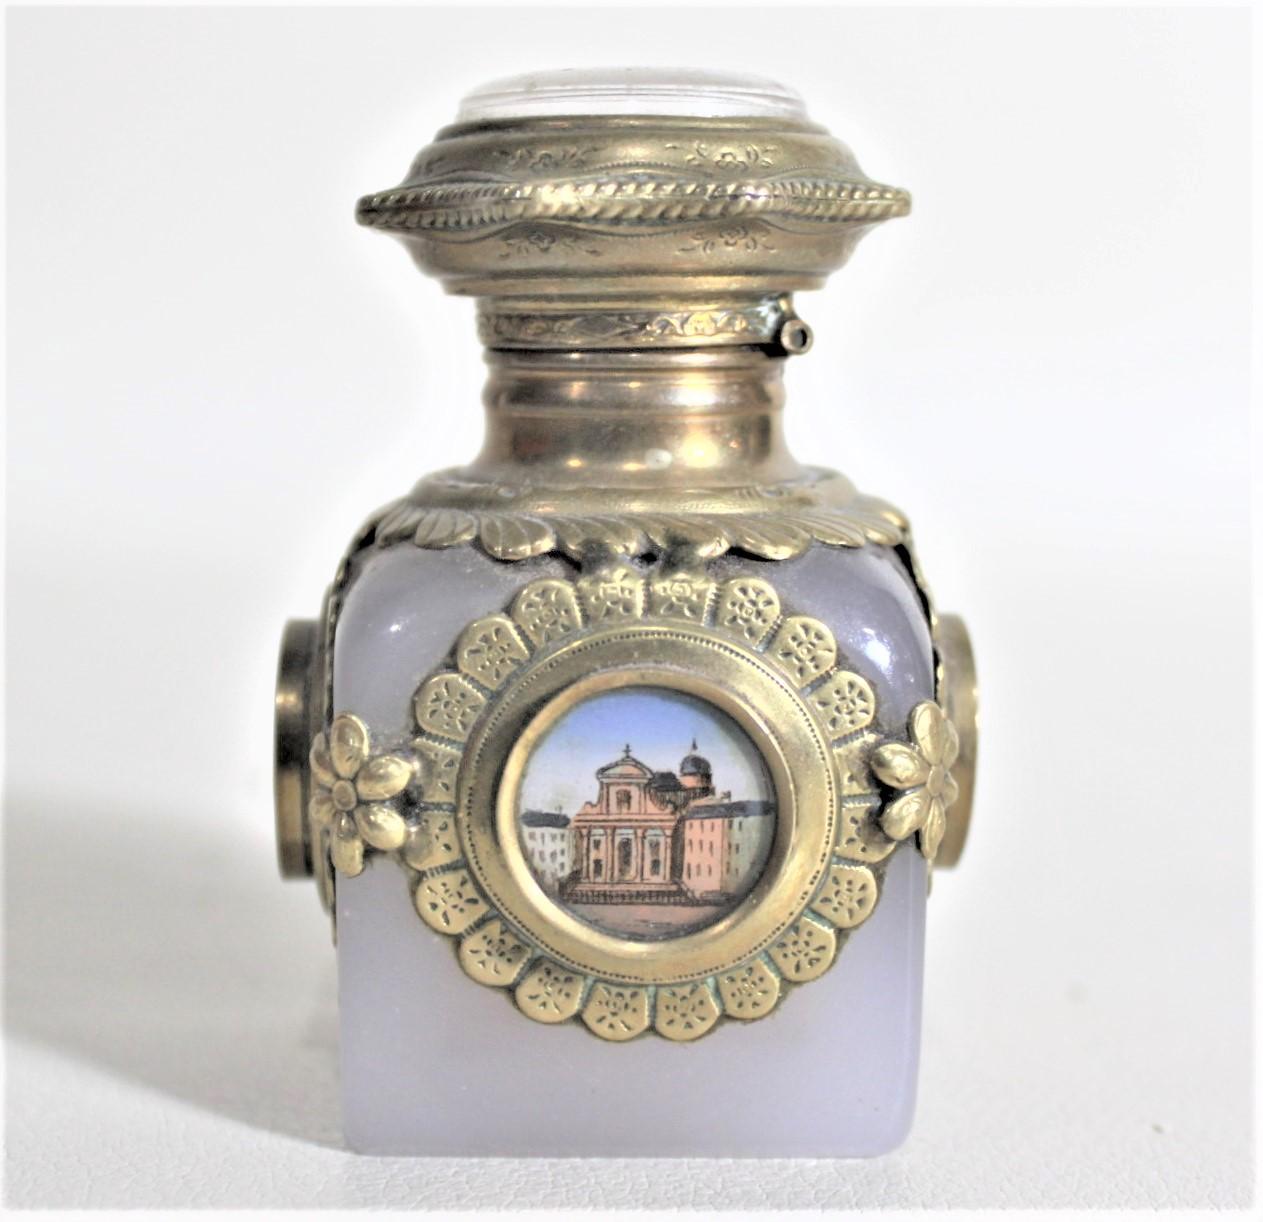 Ce flacon de parfum opalescent ancien n'est pas signé, mais on suppose qu'il a été fabriqué en Europe, probablement en France ou en Italie vers 1890 pour un Grand Tour dans le style victorien de l'époque1. Ce flacon de parfum comporte des montures